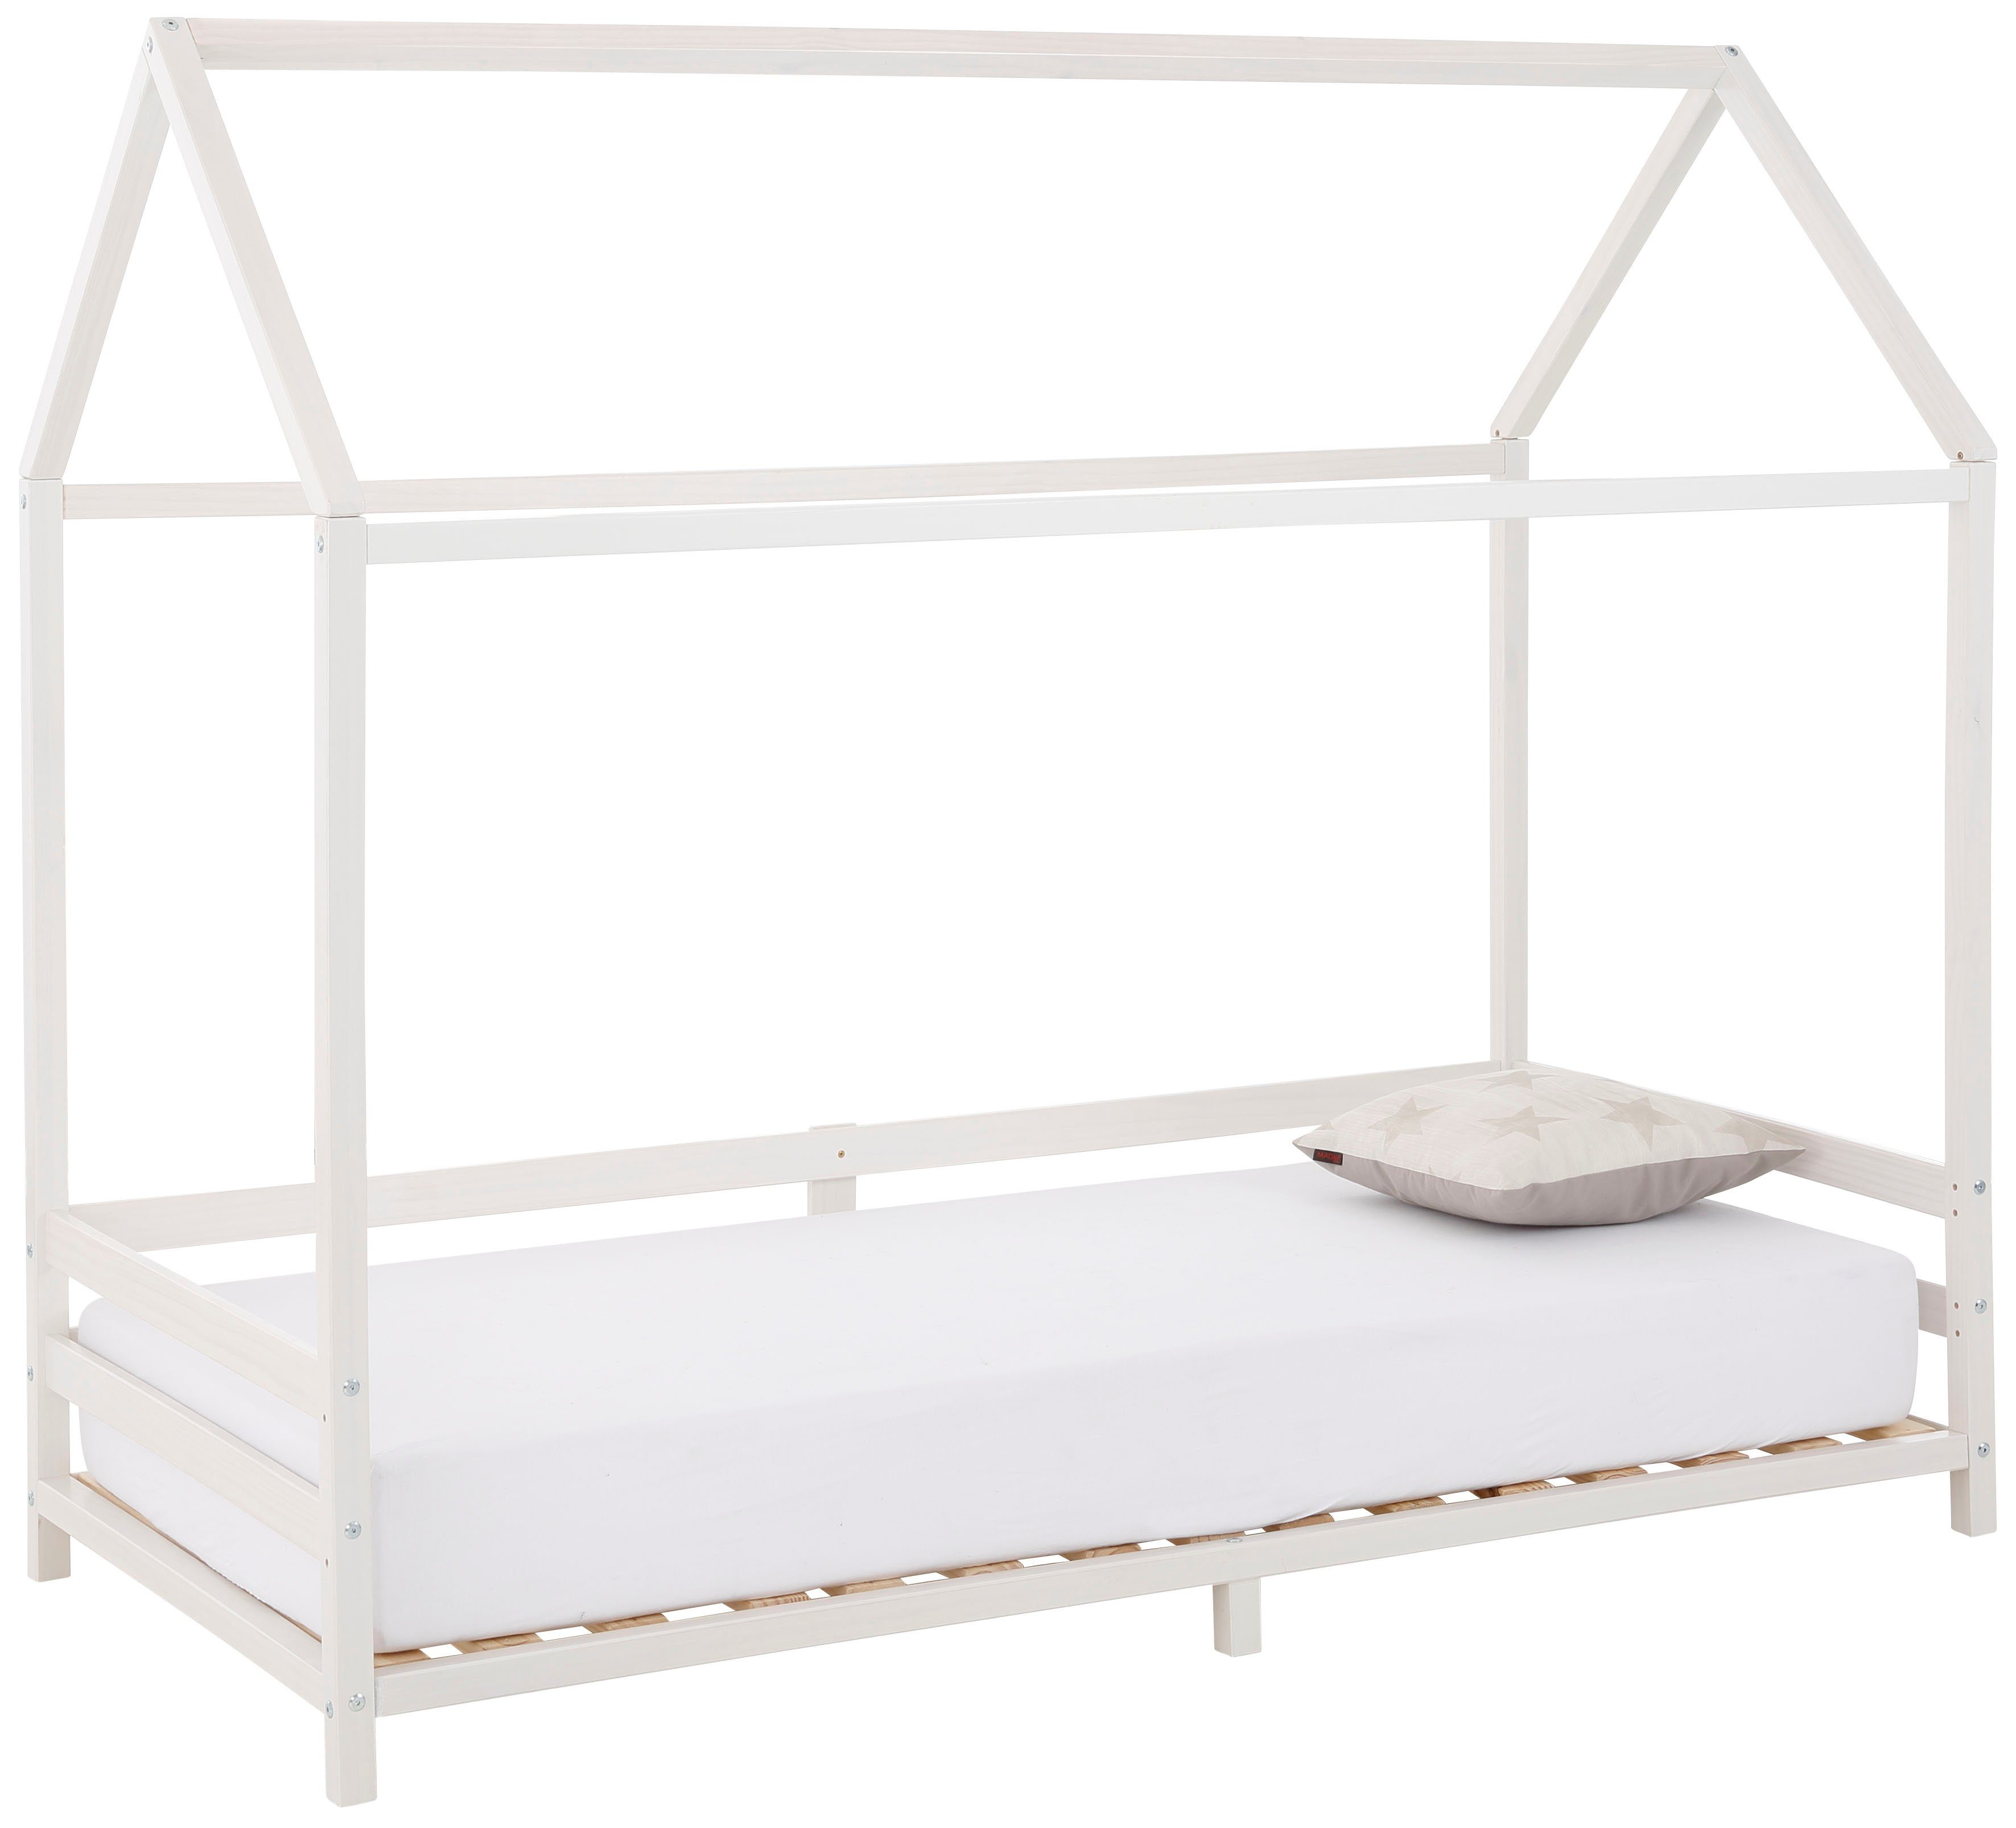 Lüttenhütt Kinderbett Ellen, Hausbett mit Reling aus Kiefernholz, zwei Farbvarianten, Breite 208 cm weiß